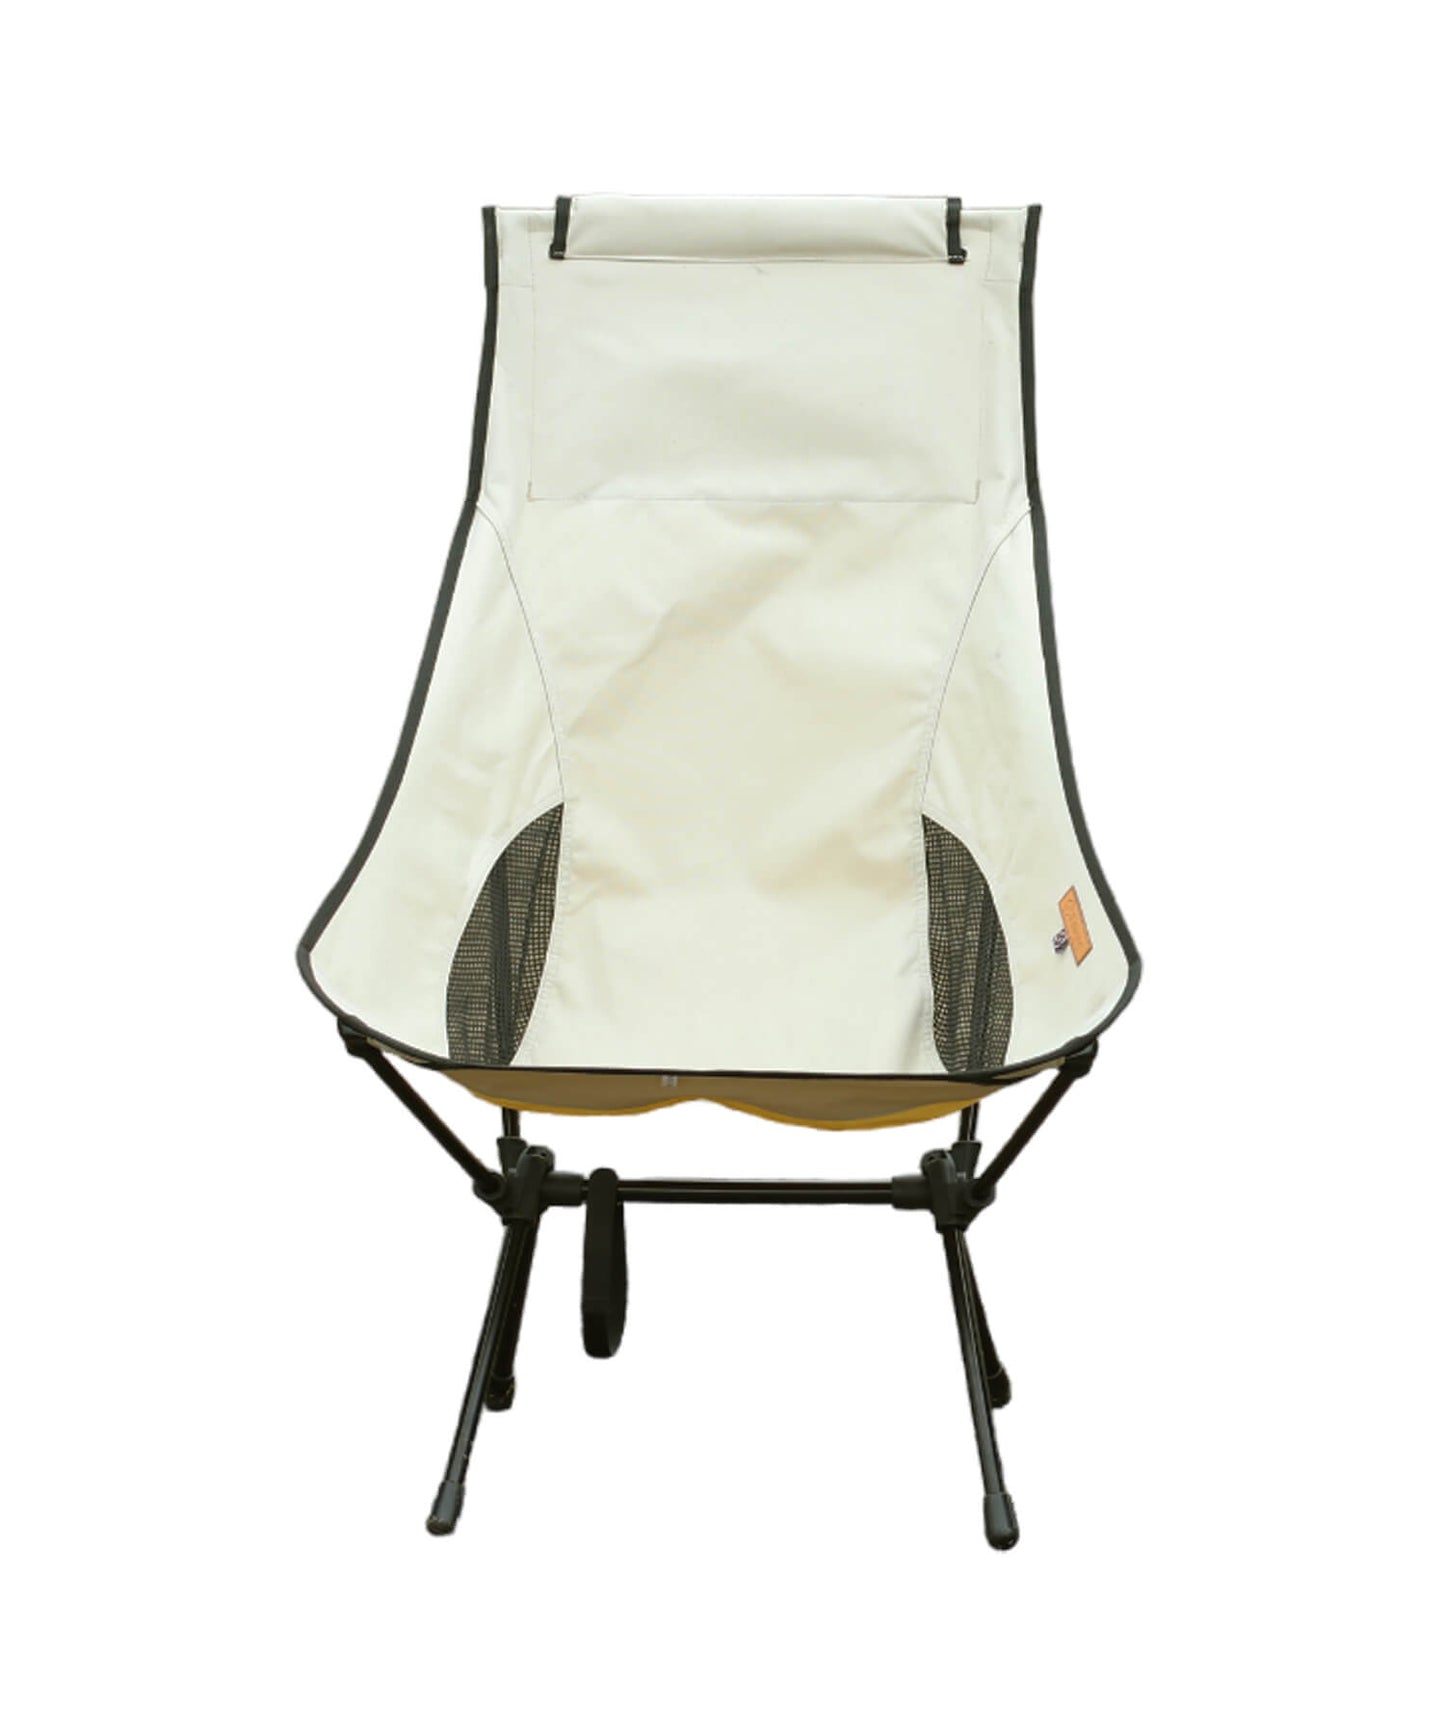 【 Alumi High-back Chair 】アルミハイバックチェア 深い座面で体にフィット